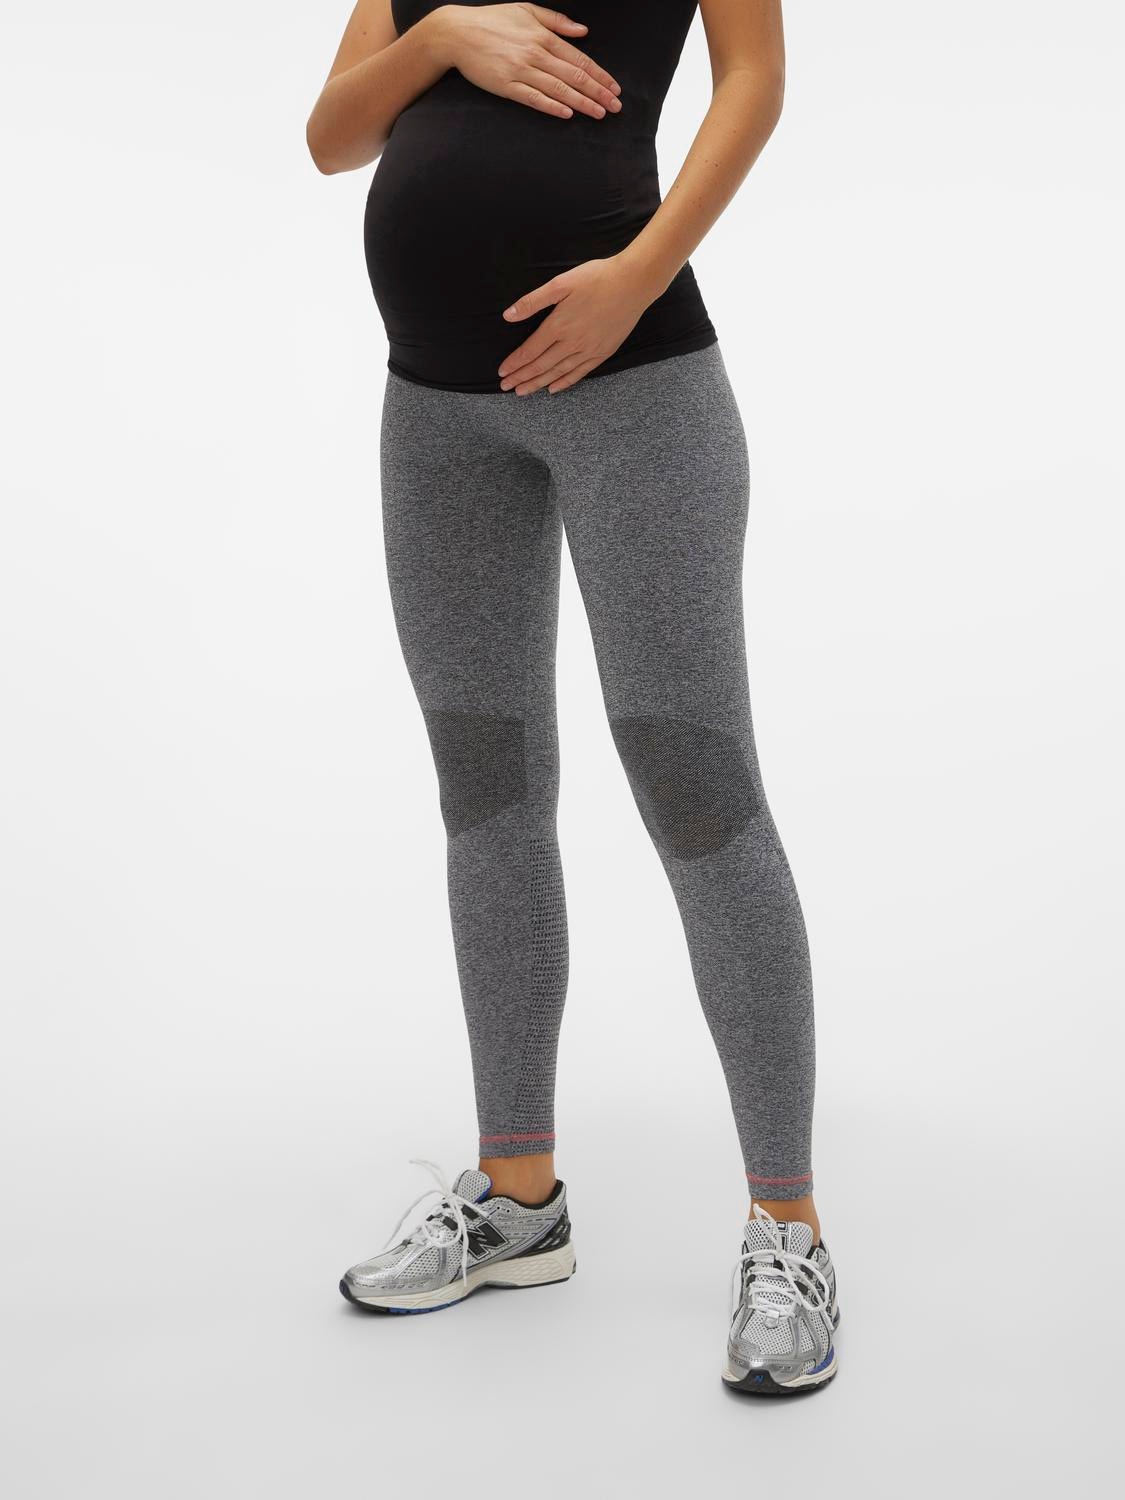 Mamalicious Maternity sports gym leggings in grey marl